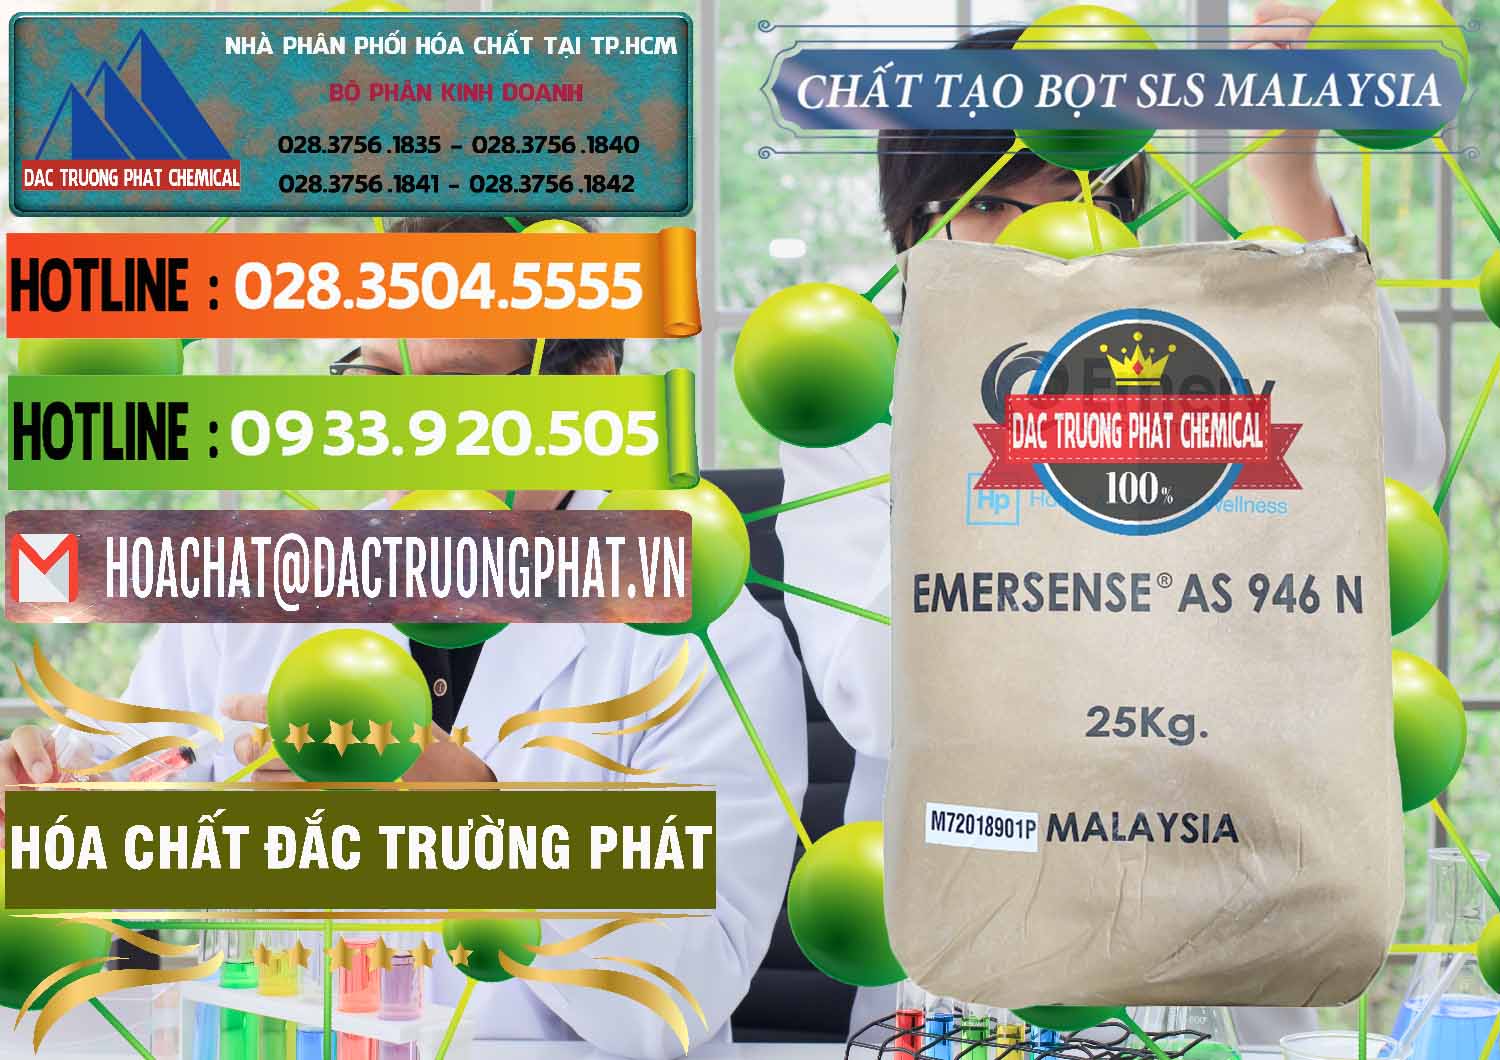 Nơi cung ứng và bán Chất Tạo Bọt SLS Emery - Emersense AS 946N Mã Lai Malaysia - 0423 - Phân phối và cung ứng hóa chất tại TP.HCM - cungcaphoachat.com.vn